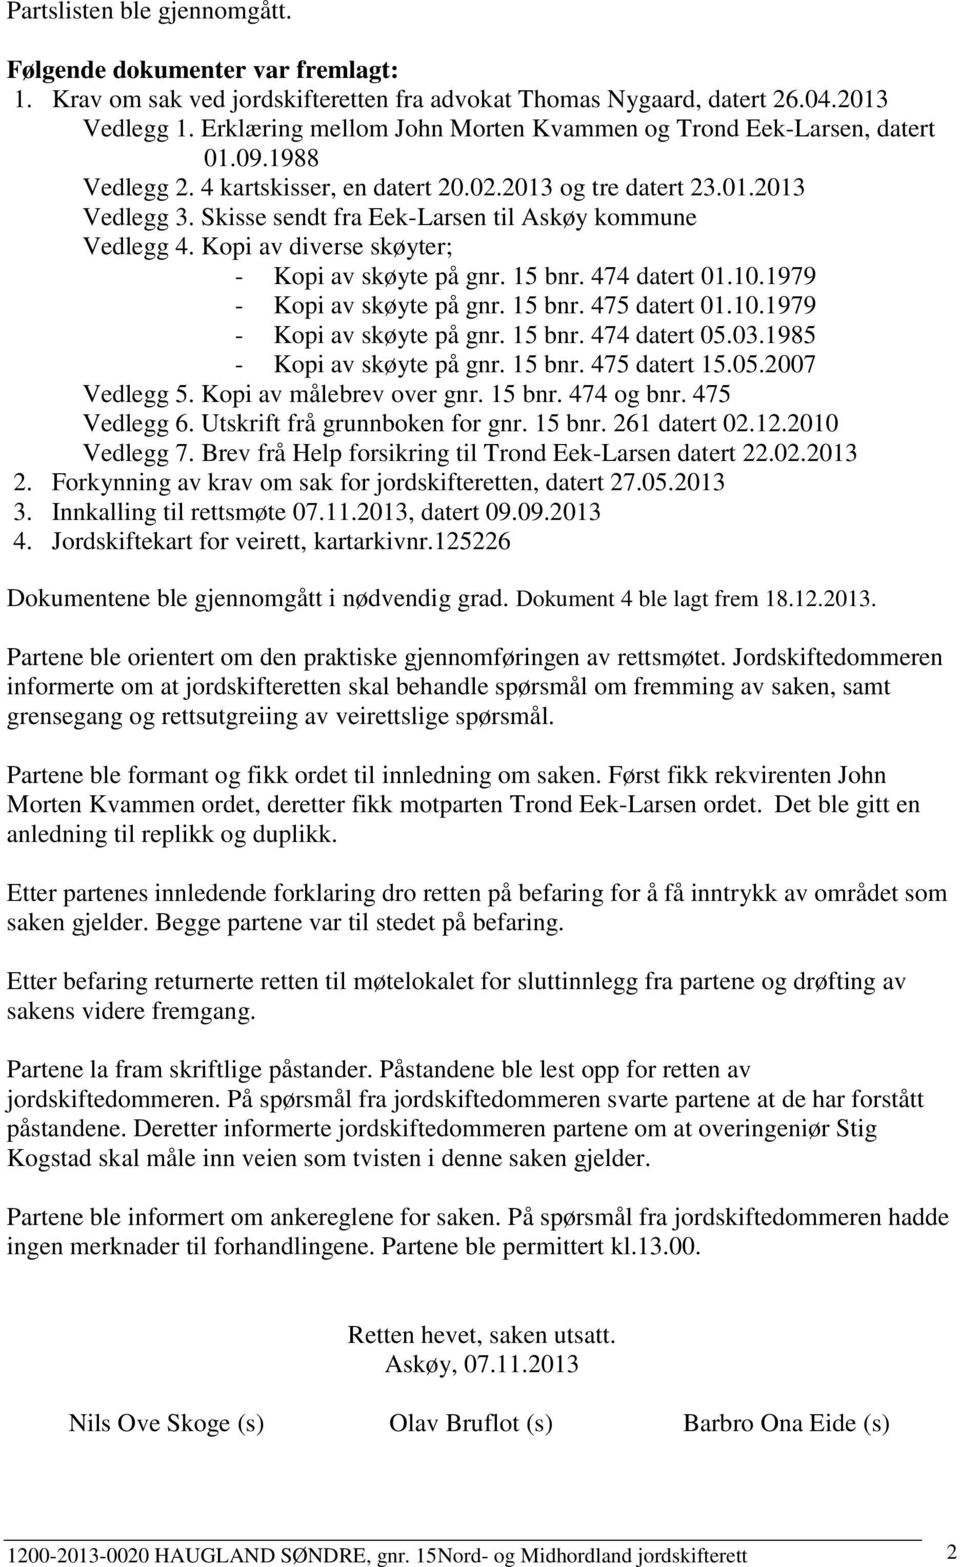 Skisse sendt fra Eek-Larsen til Askøy kommune Vedlegg 4. Kopi av diverse skøyter; - Kopi av skøyte på gnr. 15 bnr. 474 datert 01.10.1979 - Kopi av skøyte på gnr. 15 bnr. 475 datert 01.10.1979 - Kopi av skøyte på gnr. 15 bnr. 474 datert 05.